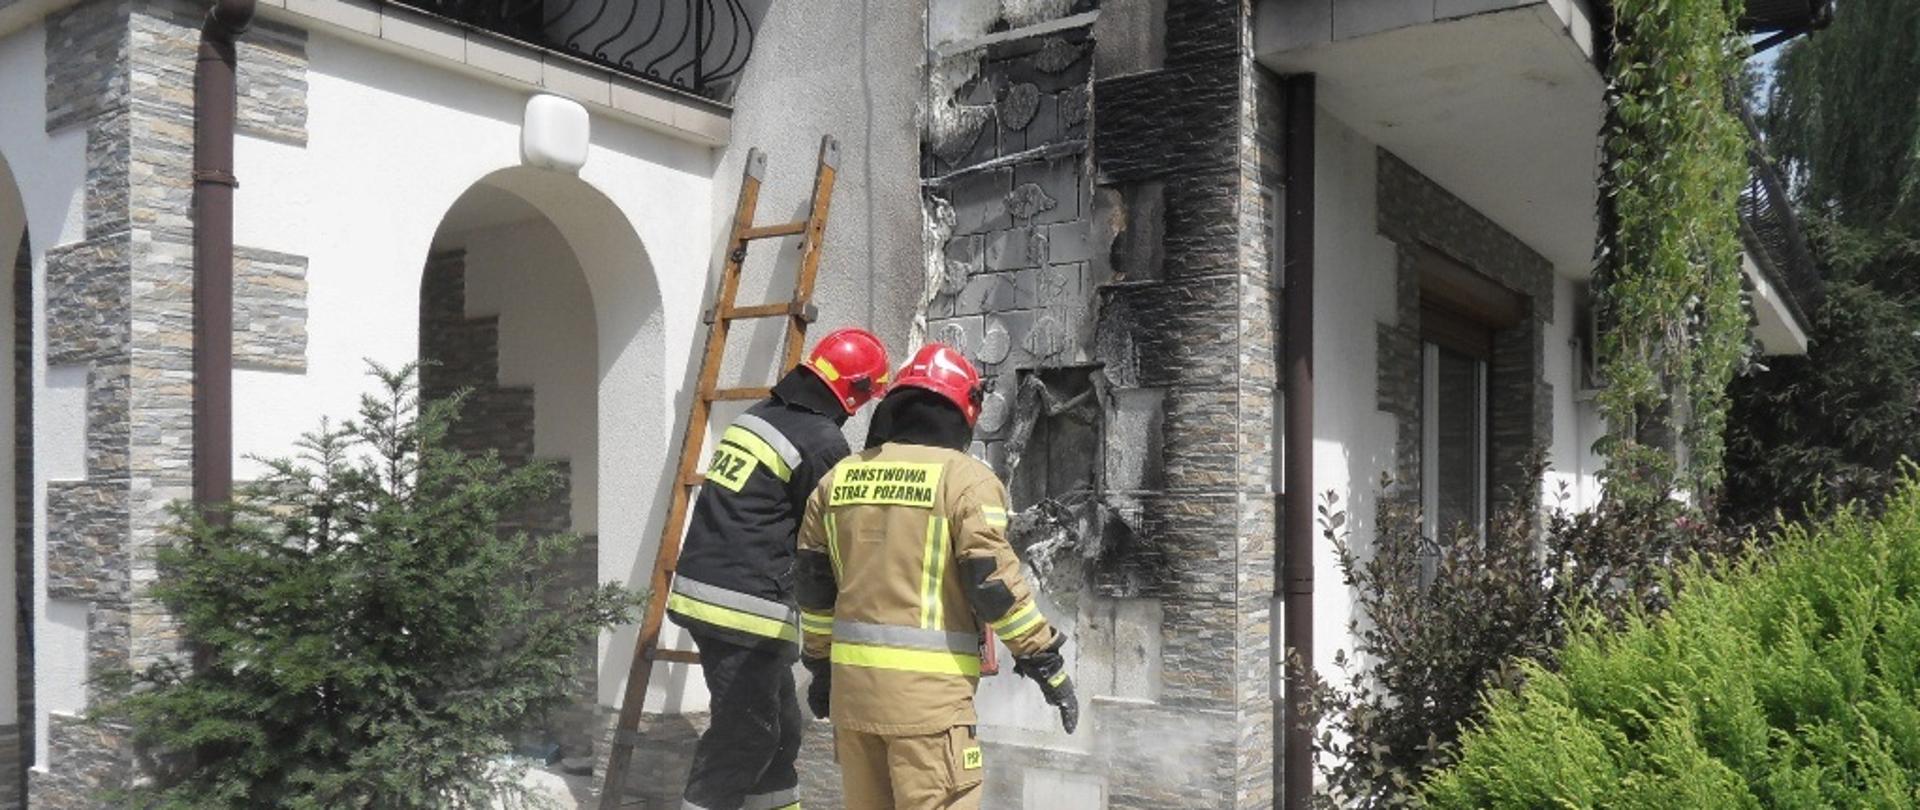 Na zdjęciu dwóch strażaków dokonujących rozbiórki nadpalonej izolacji termicznej budynku mieszkalnego